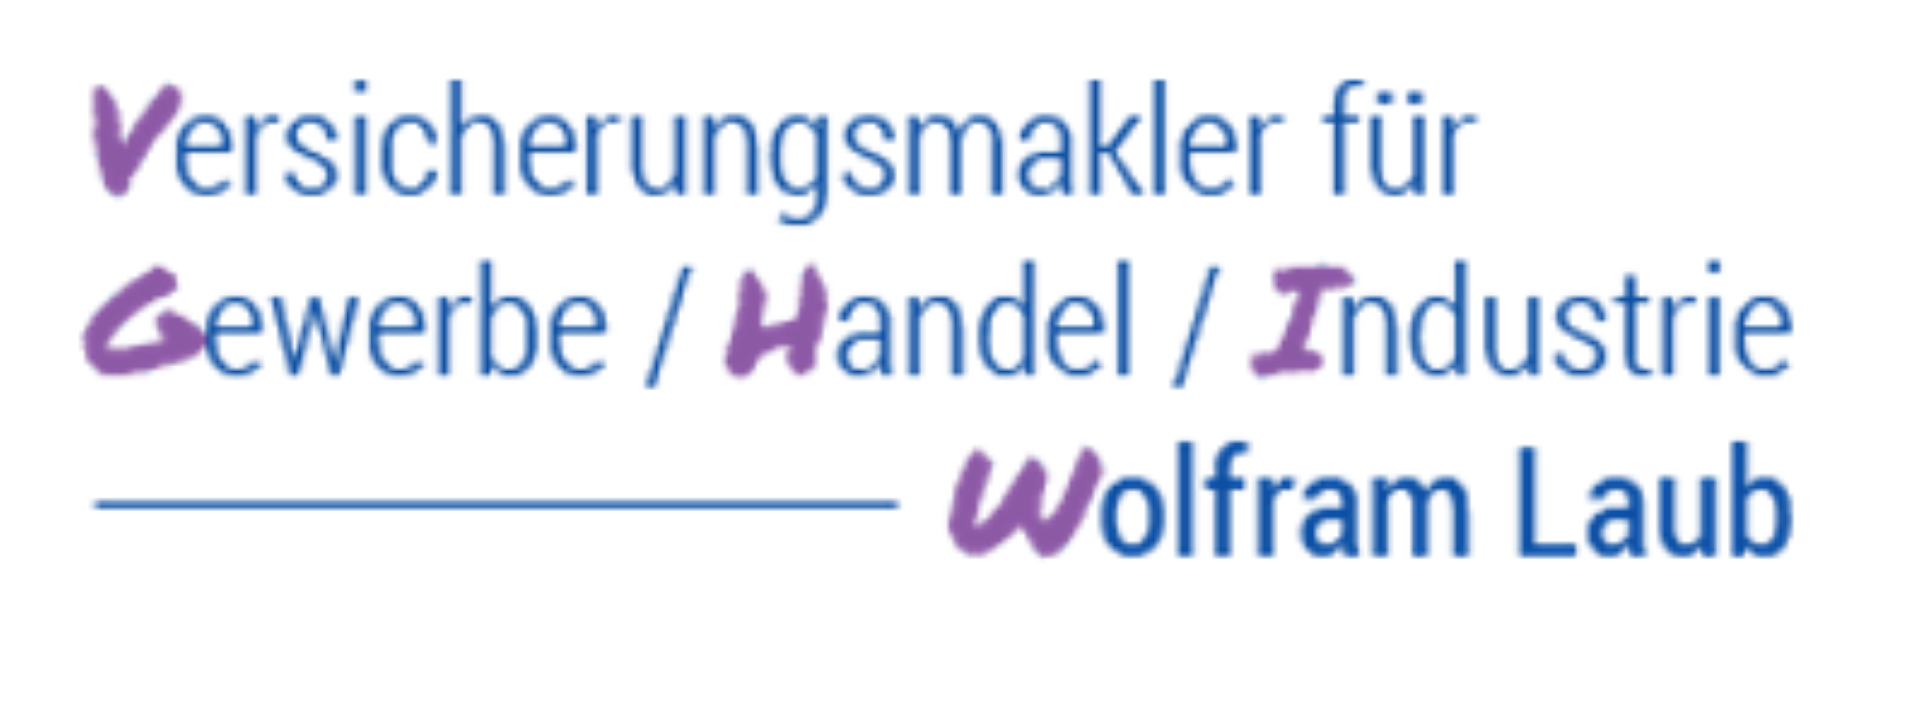 Bild 4 Versicherungsmakler für Gewerbe / Handel / Industrie Wolfram Laub in Hirrlingen